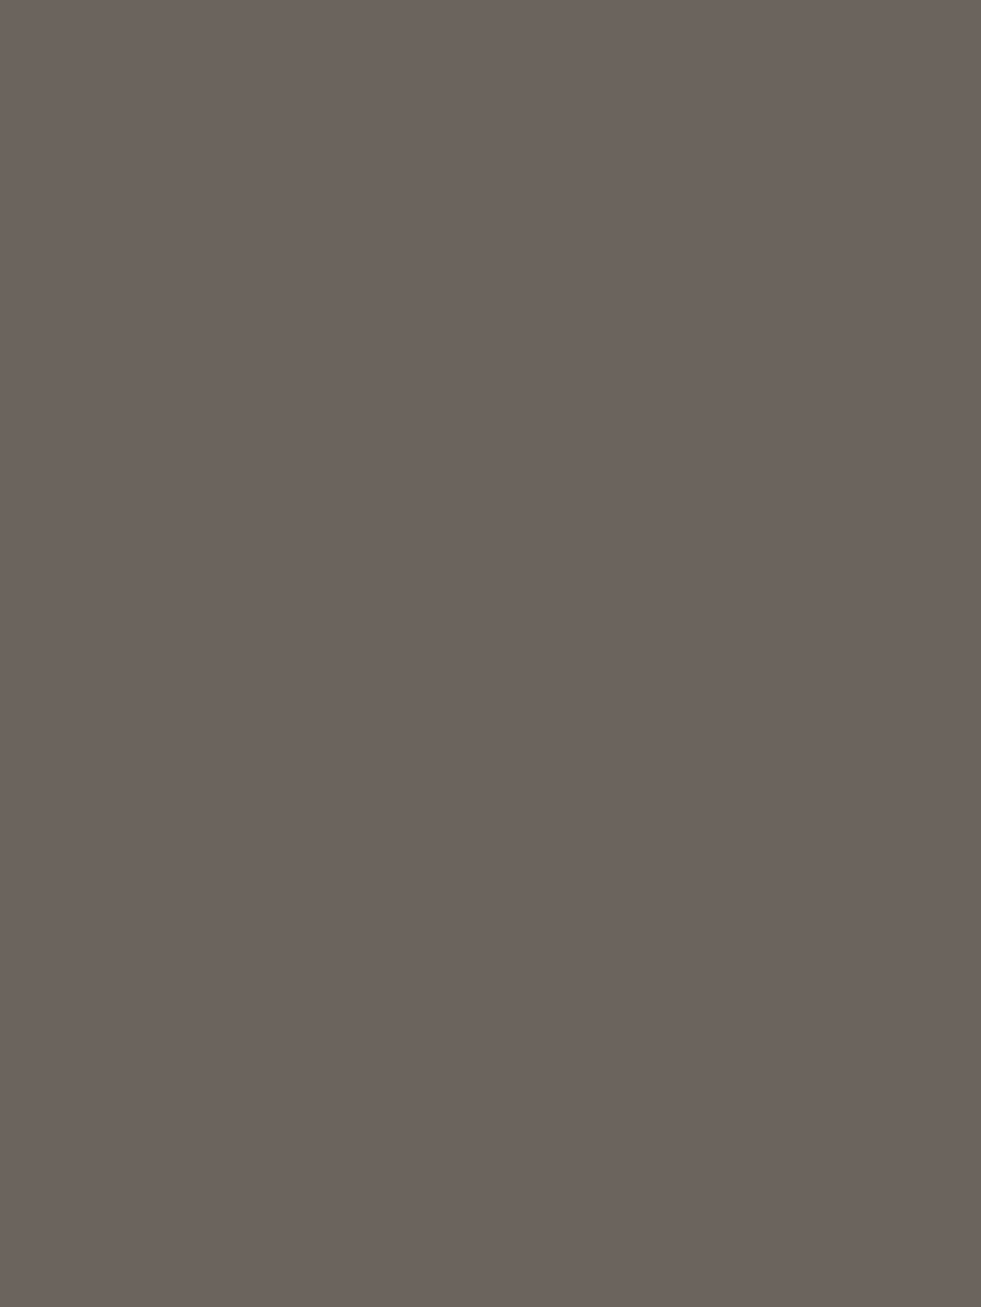 Рекламный плакат товарищества «Брокар и Ко». Начало XX века. Щелковский историко-художественный музей, Щелково, Московская область